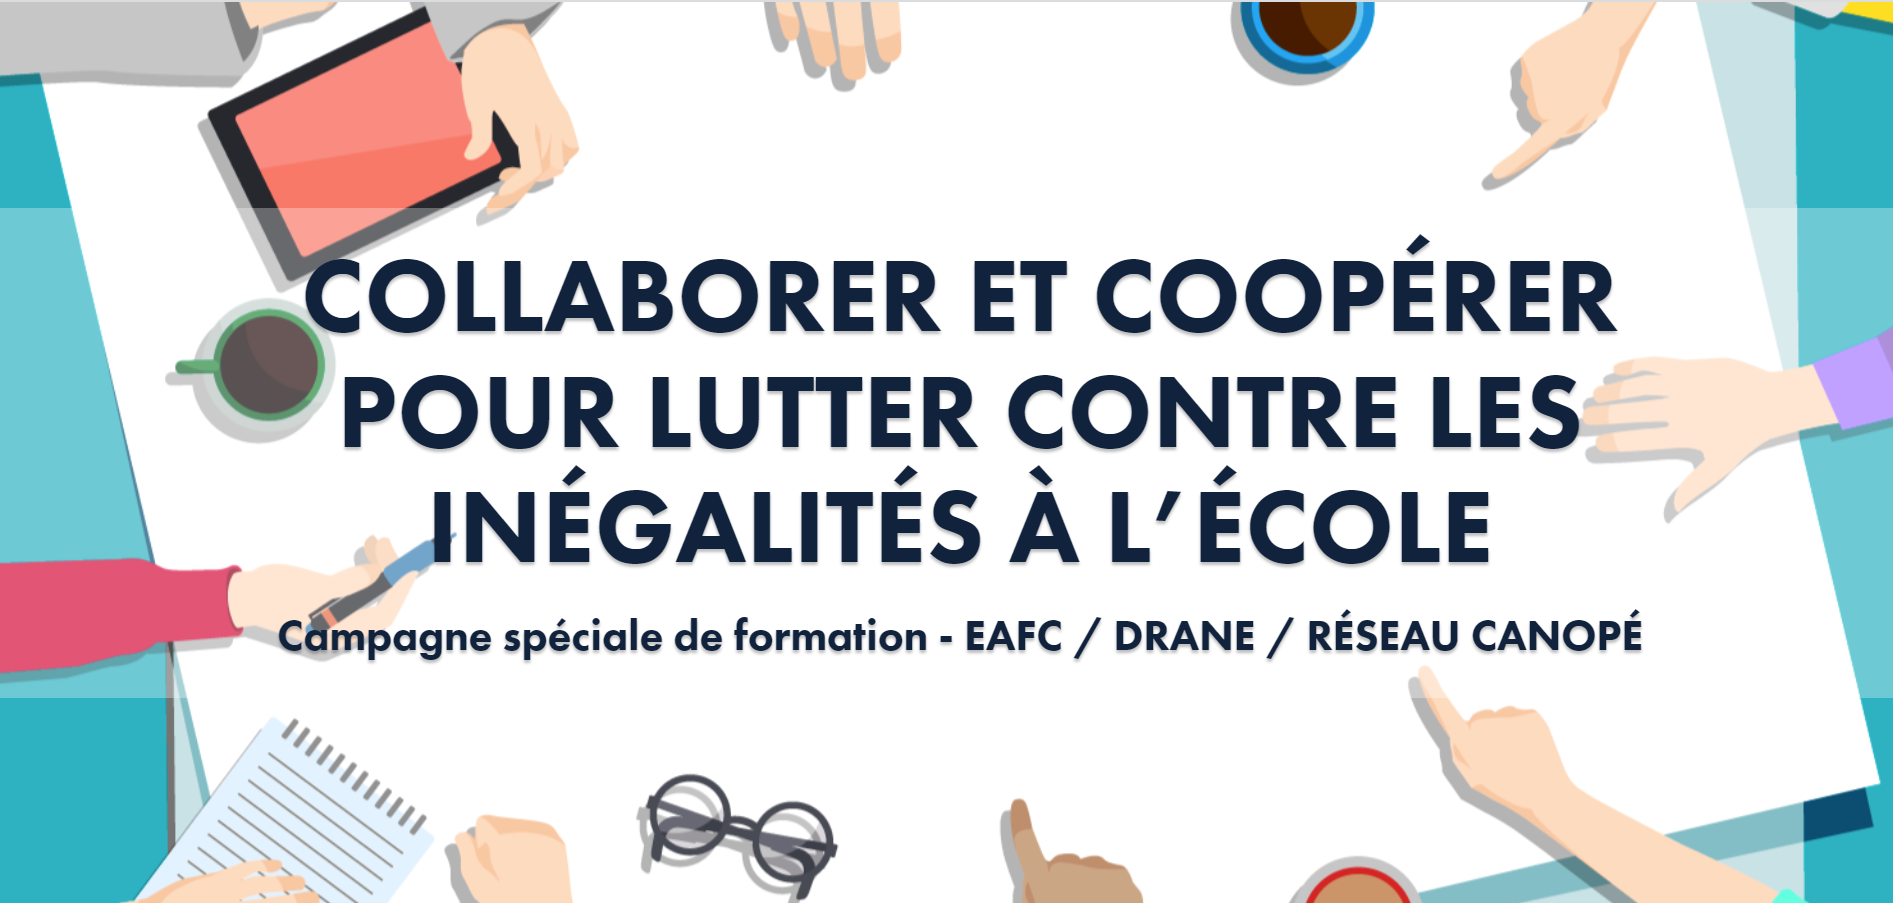 Collaborer et coopérer pour lutter contre les inégalités à l'école - Campagne spéciale de foramtion - EAFC/DRANE/RÉSEAU CANOPÉ